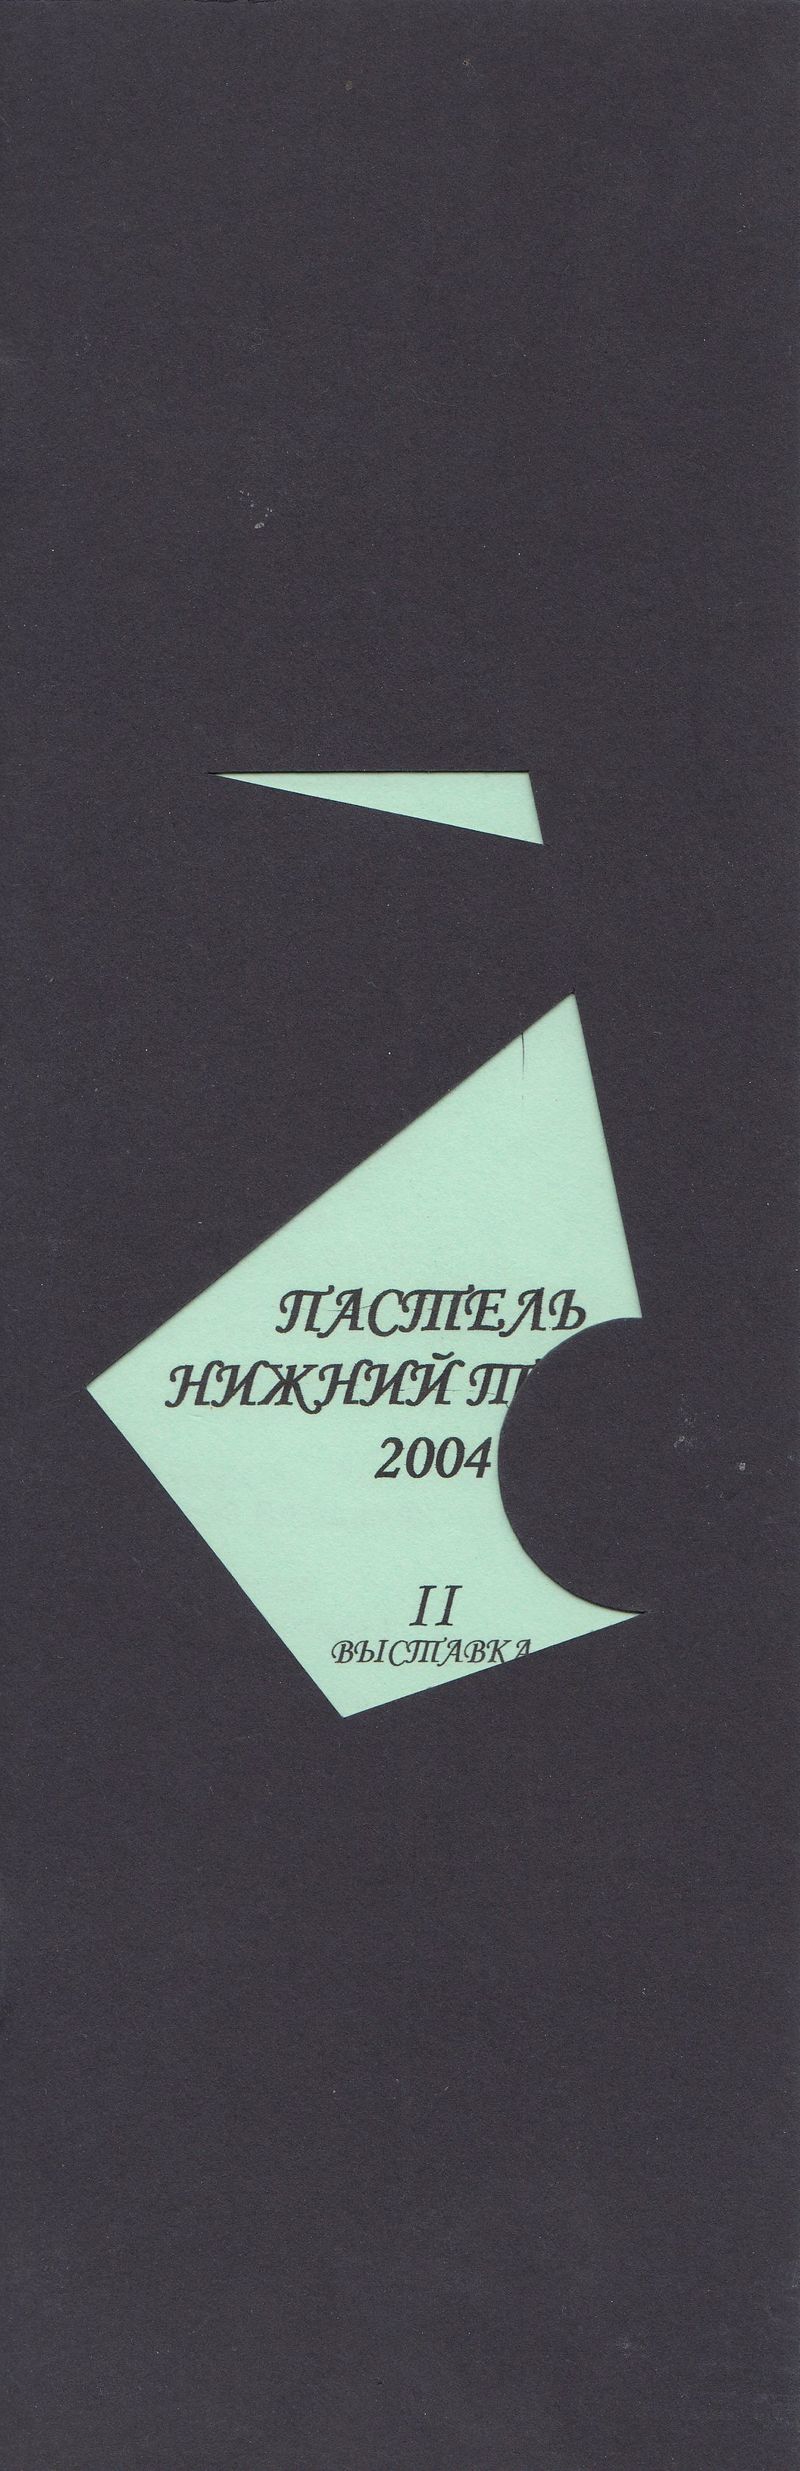 Пастель. Нижний Тагил — 2004. II уральская выставка товарищества художников‑пастелистов